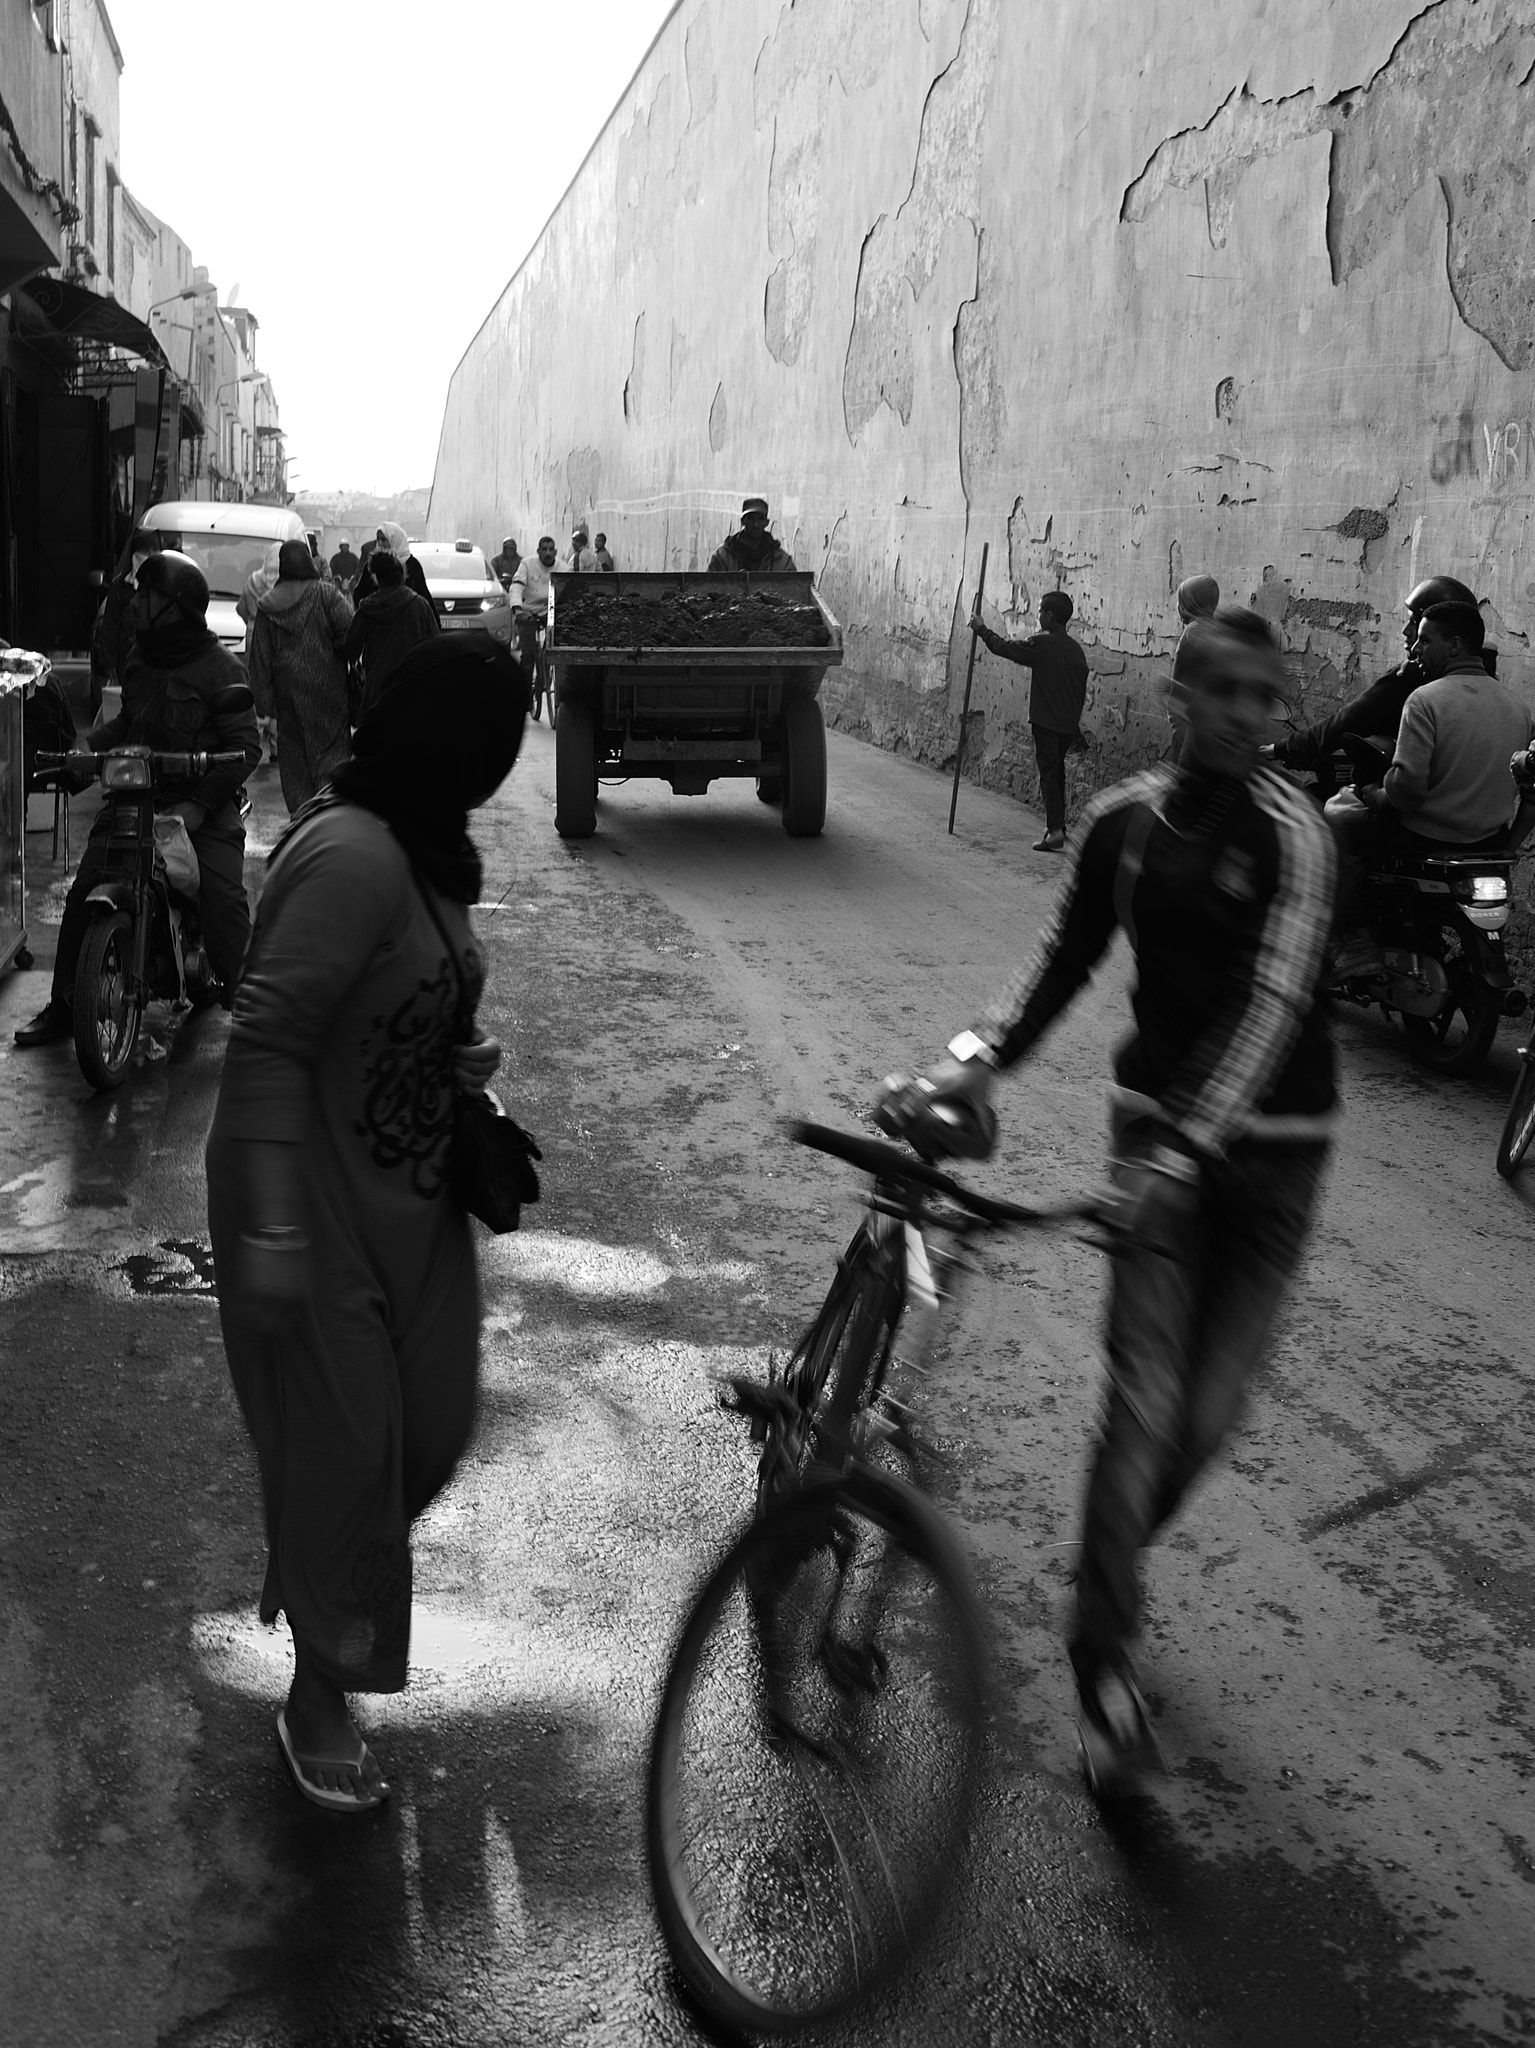 Nikon Df + AF-S Nikkor 35mm f/1.8G sample photo. Mellah marrakech photography